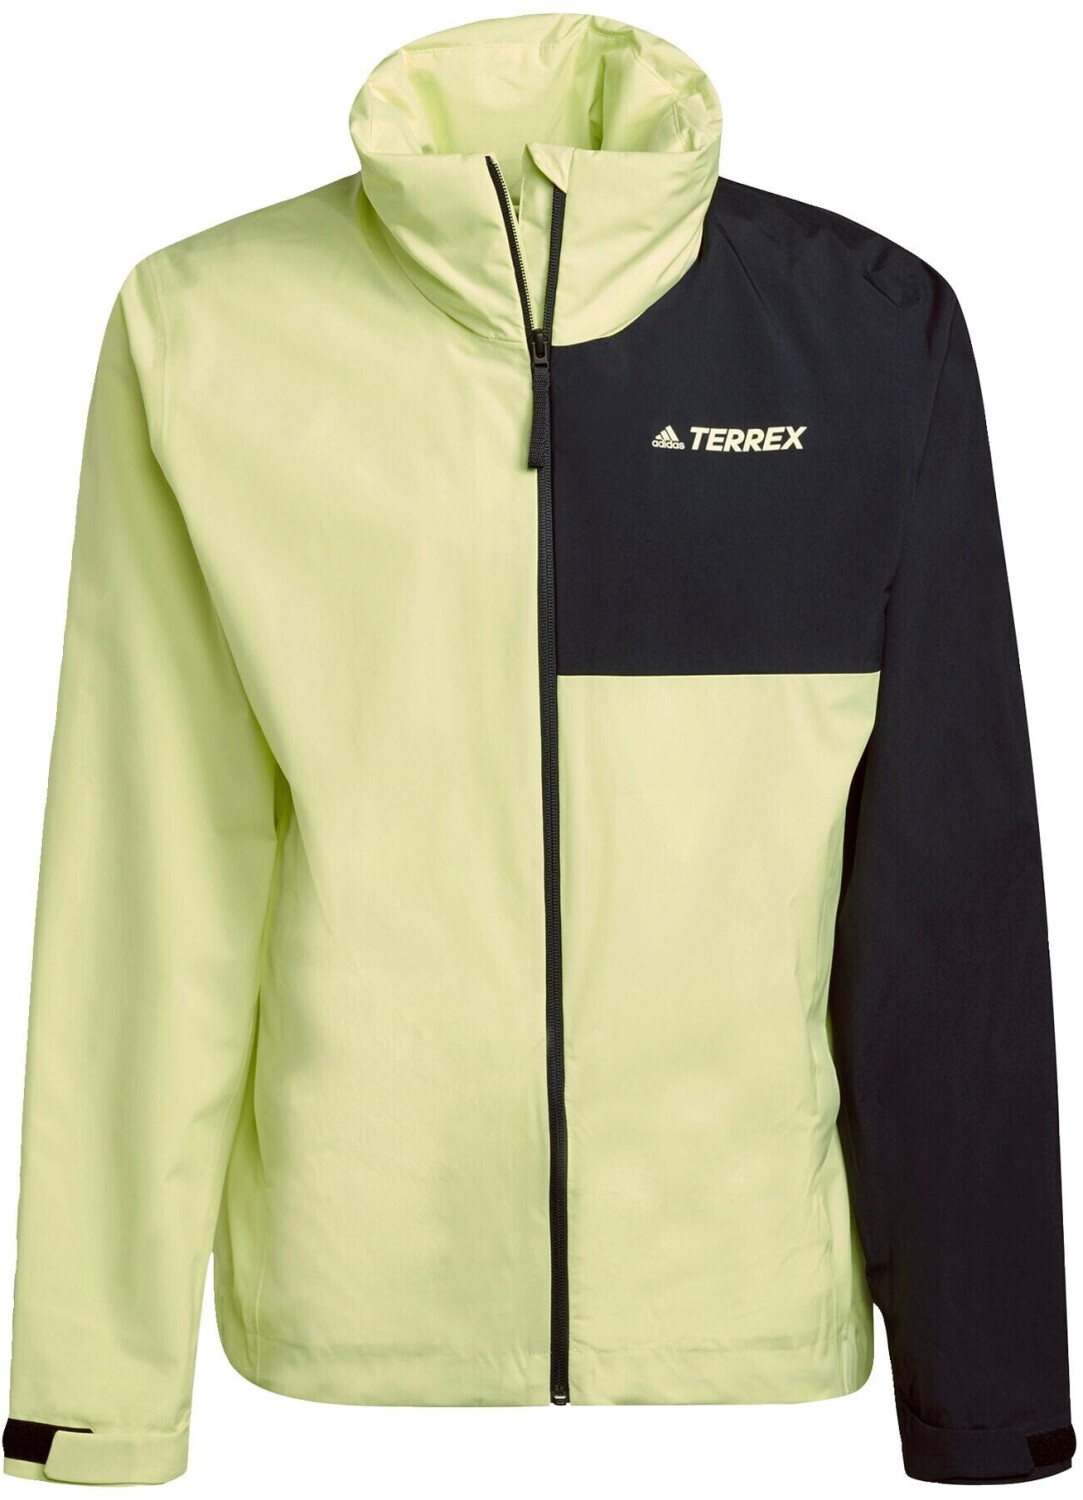 Adidas Terrex ab Two-Layer € Jacket RAIN.RDY Rain 47,99 Preisvergleich Multi Primegreen bei 